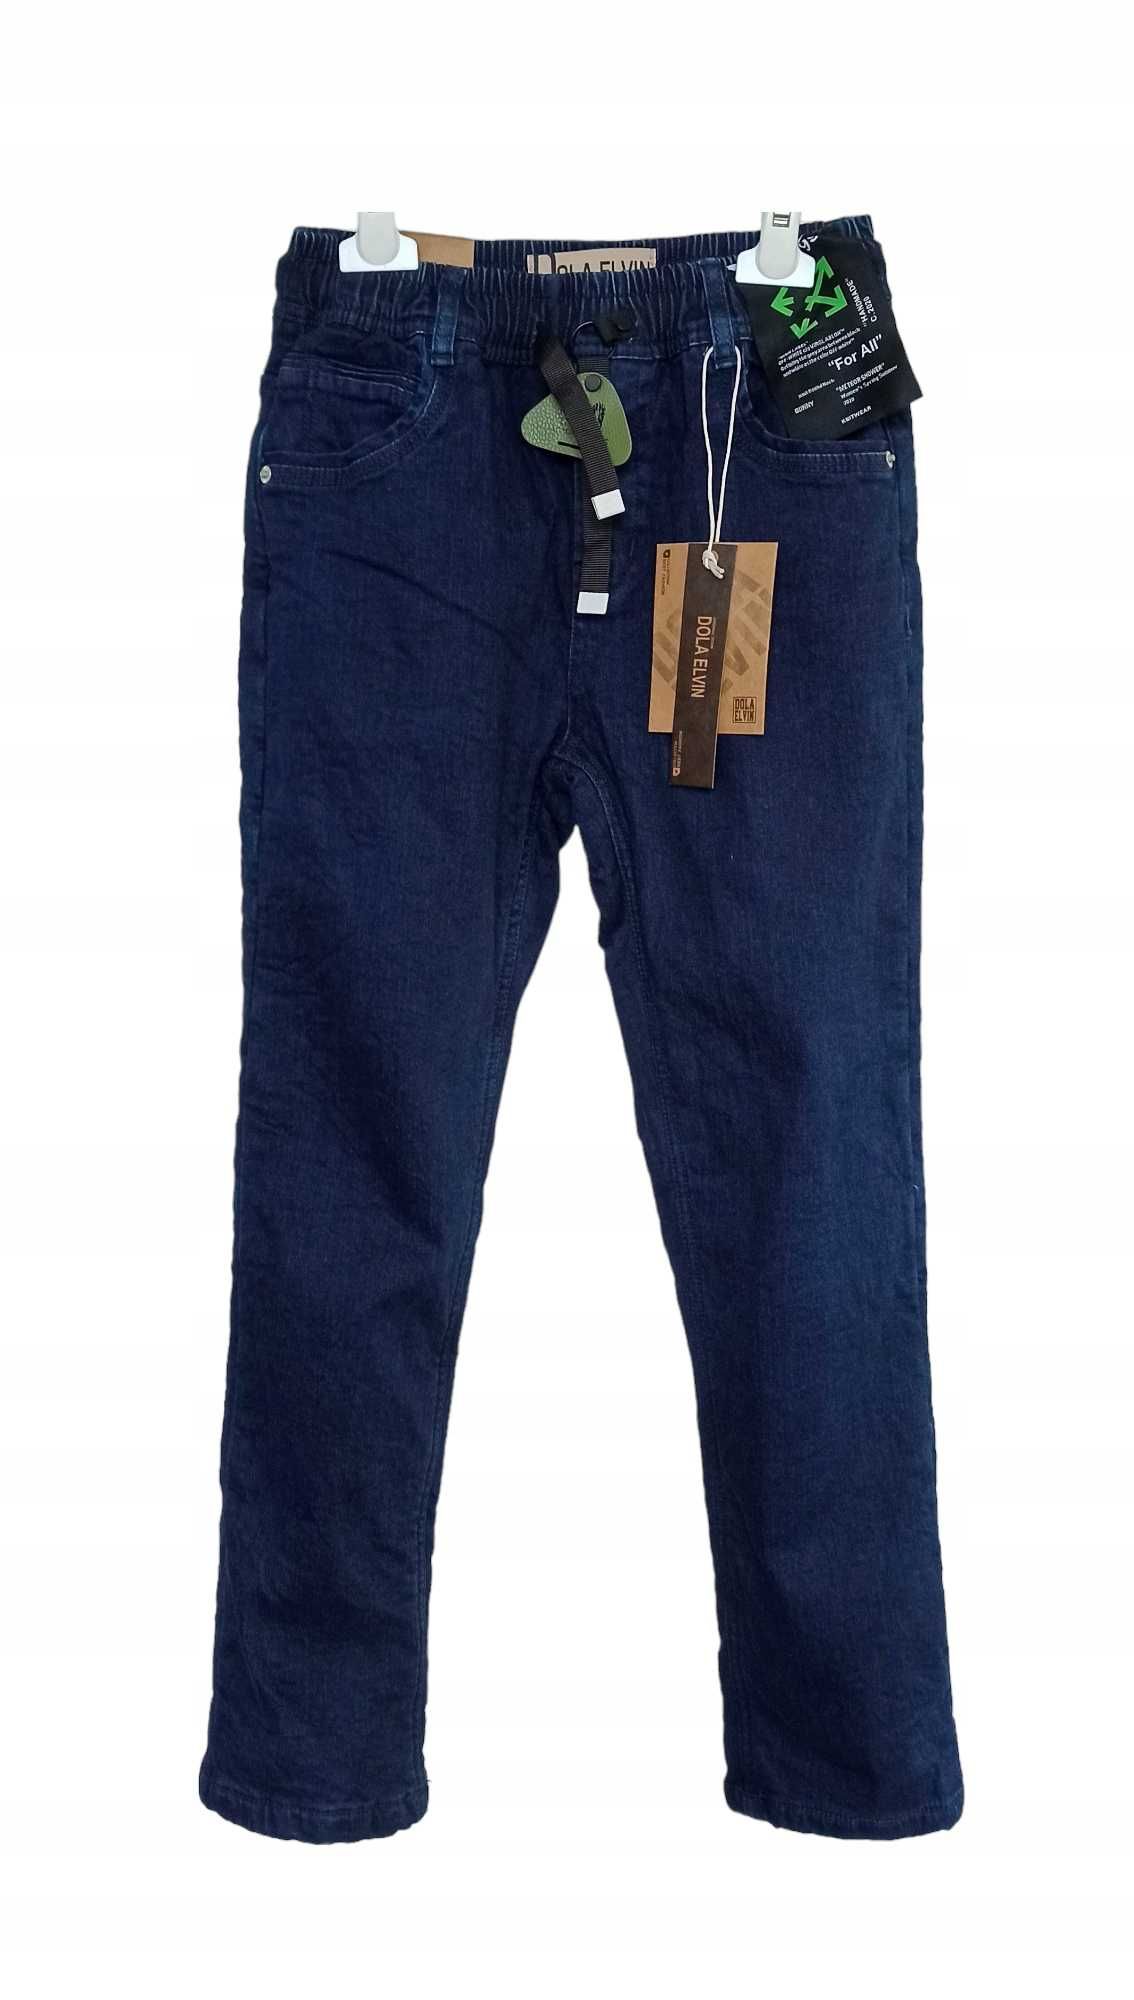 Spodnie Jeans miękkie elastyczne GUMA ocieplane polarem nowy 158-164